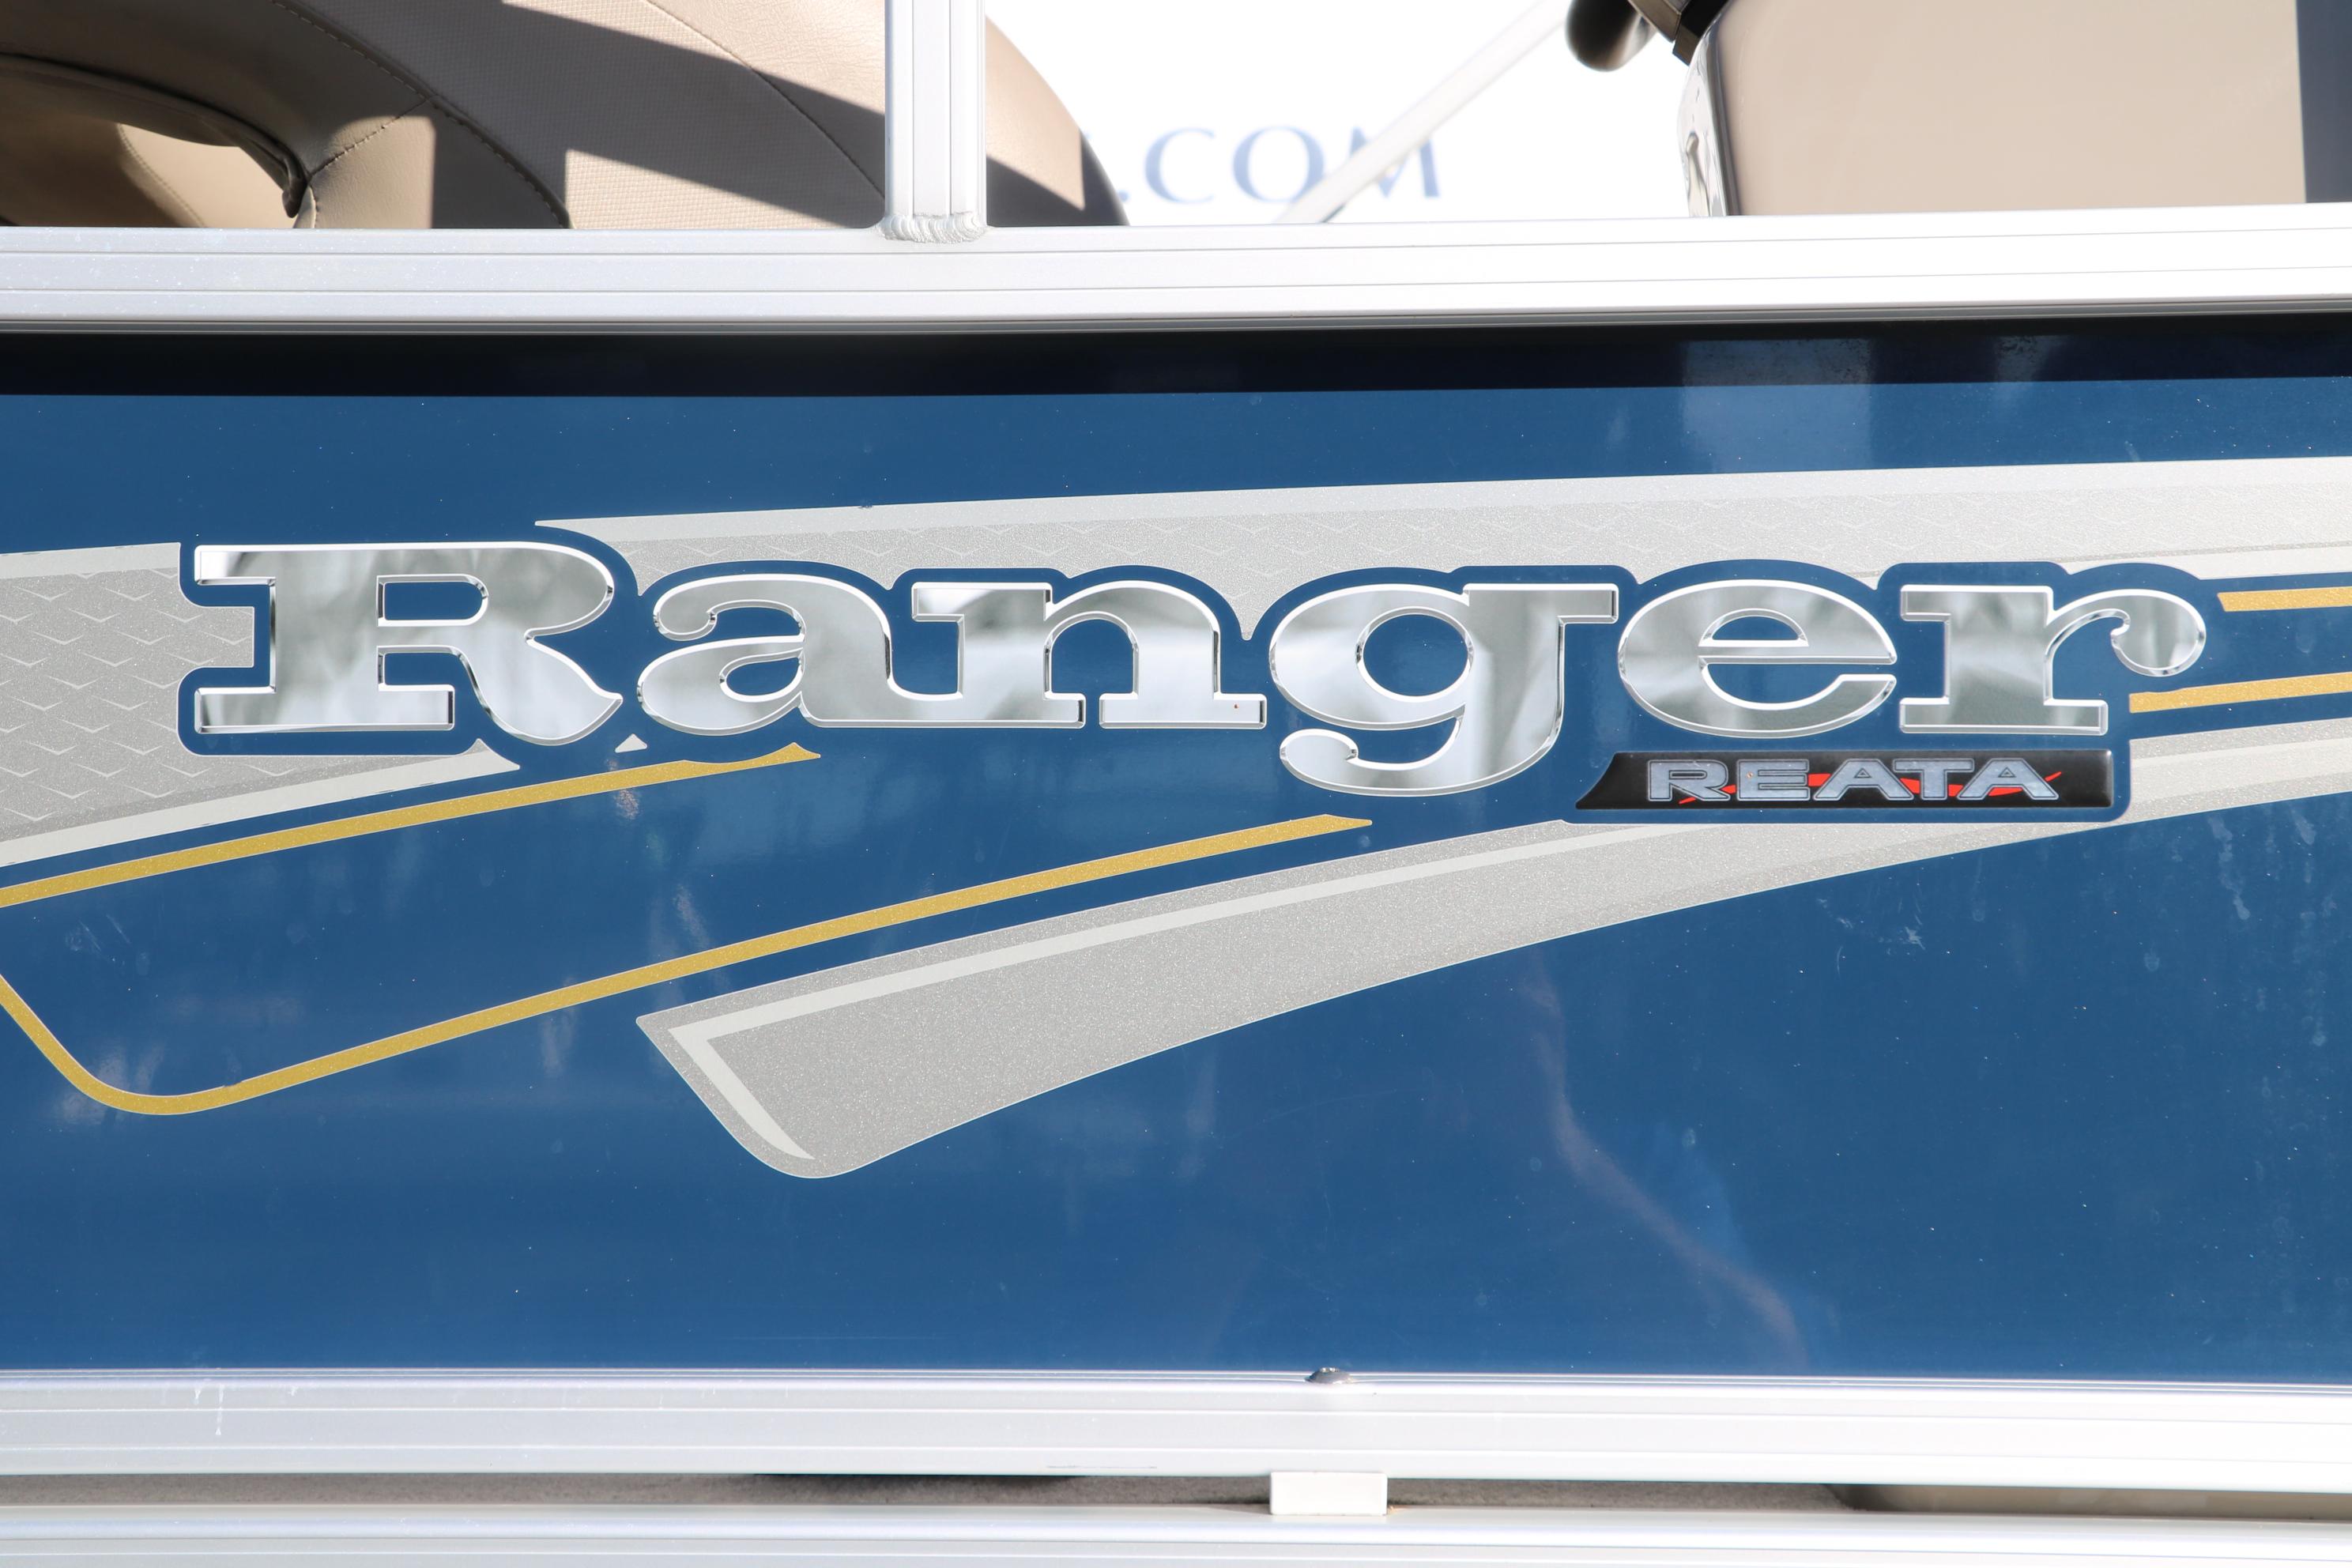 2021 Ranger RP200C